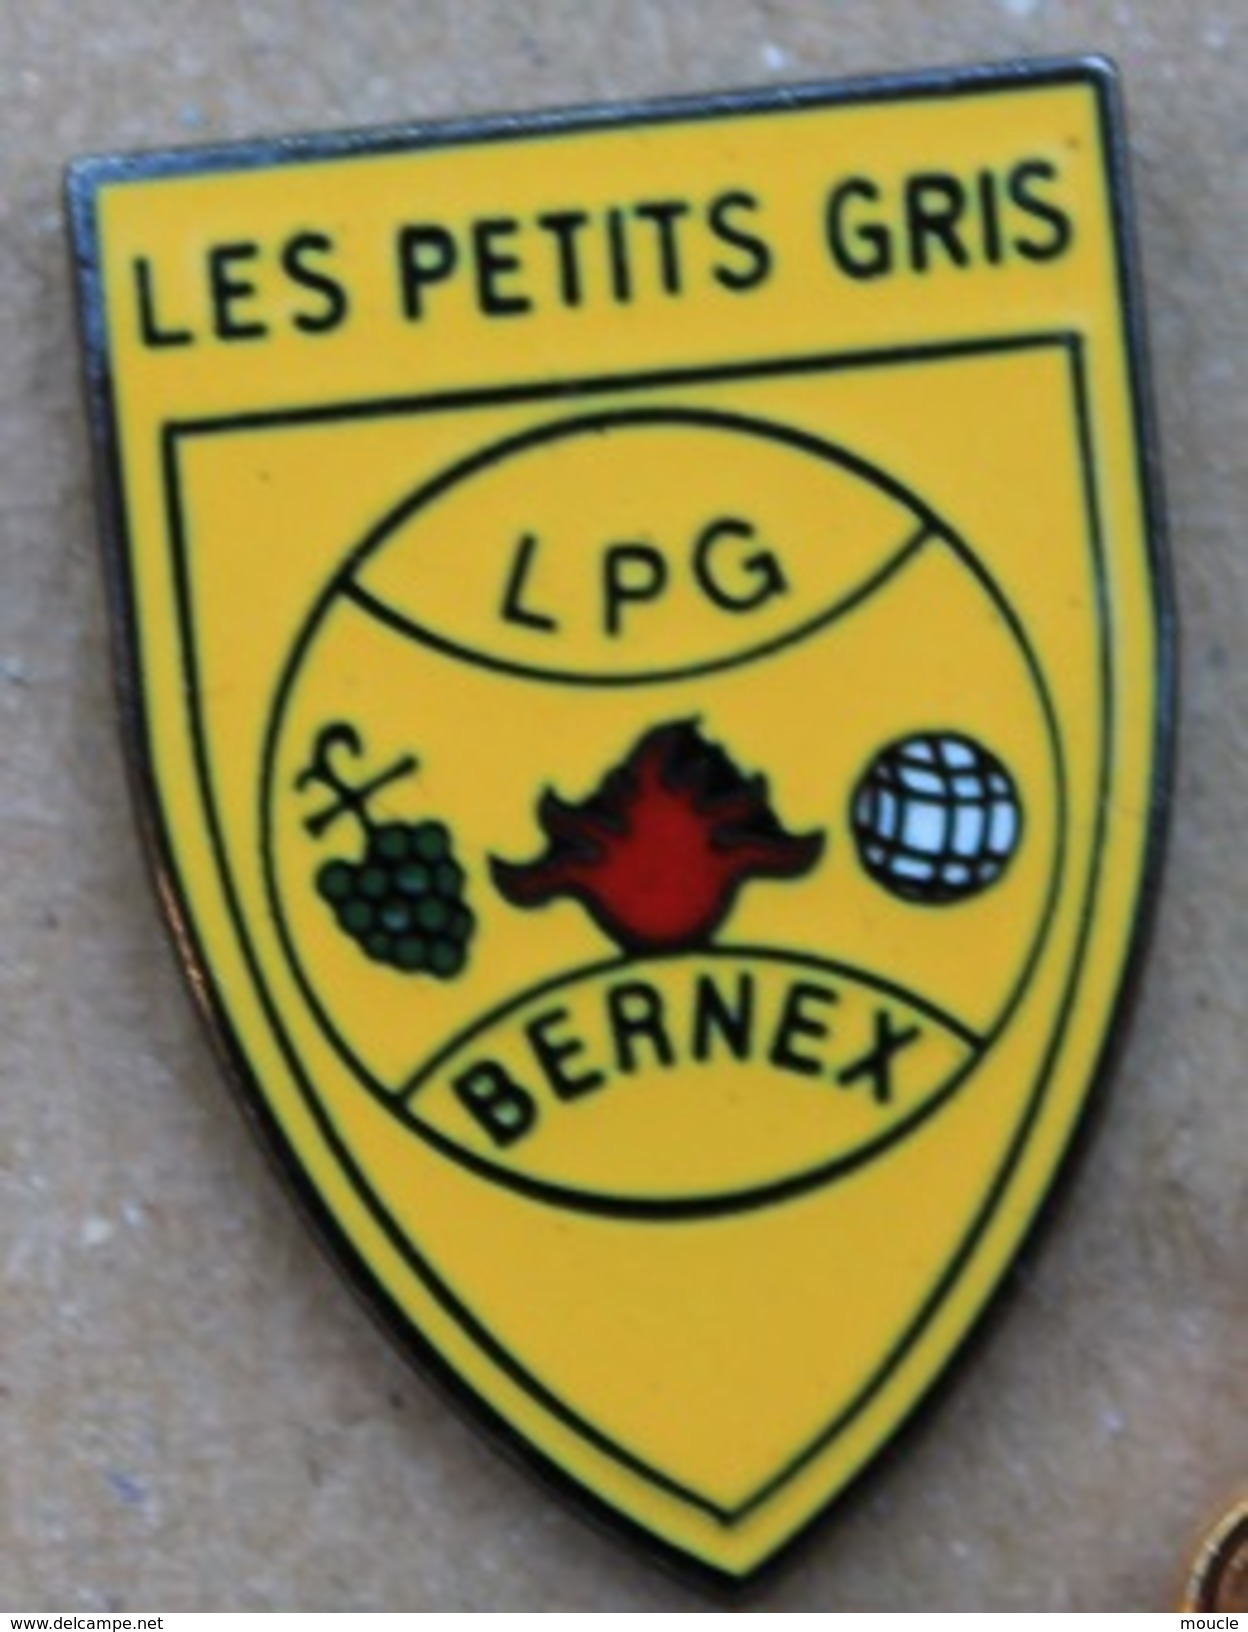 LES PETITS GRIS - LPG - CLUB DE PETANQUE - BERNEX - GENEVE - SUISSE - BOULE - RASINS  -            (ROSE) - Boule/Pétanque